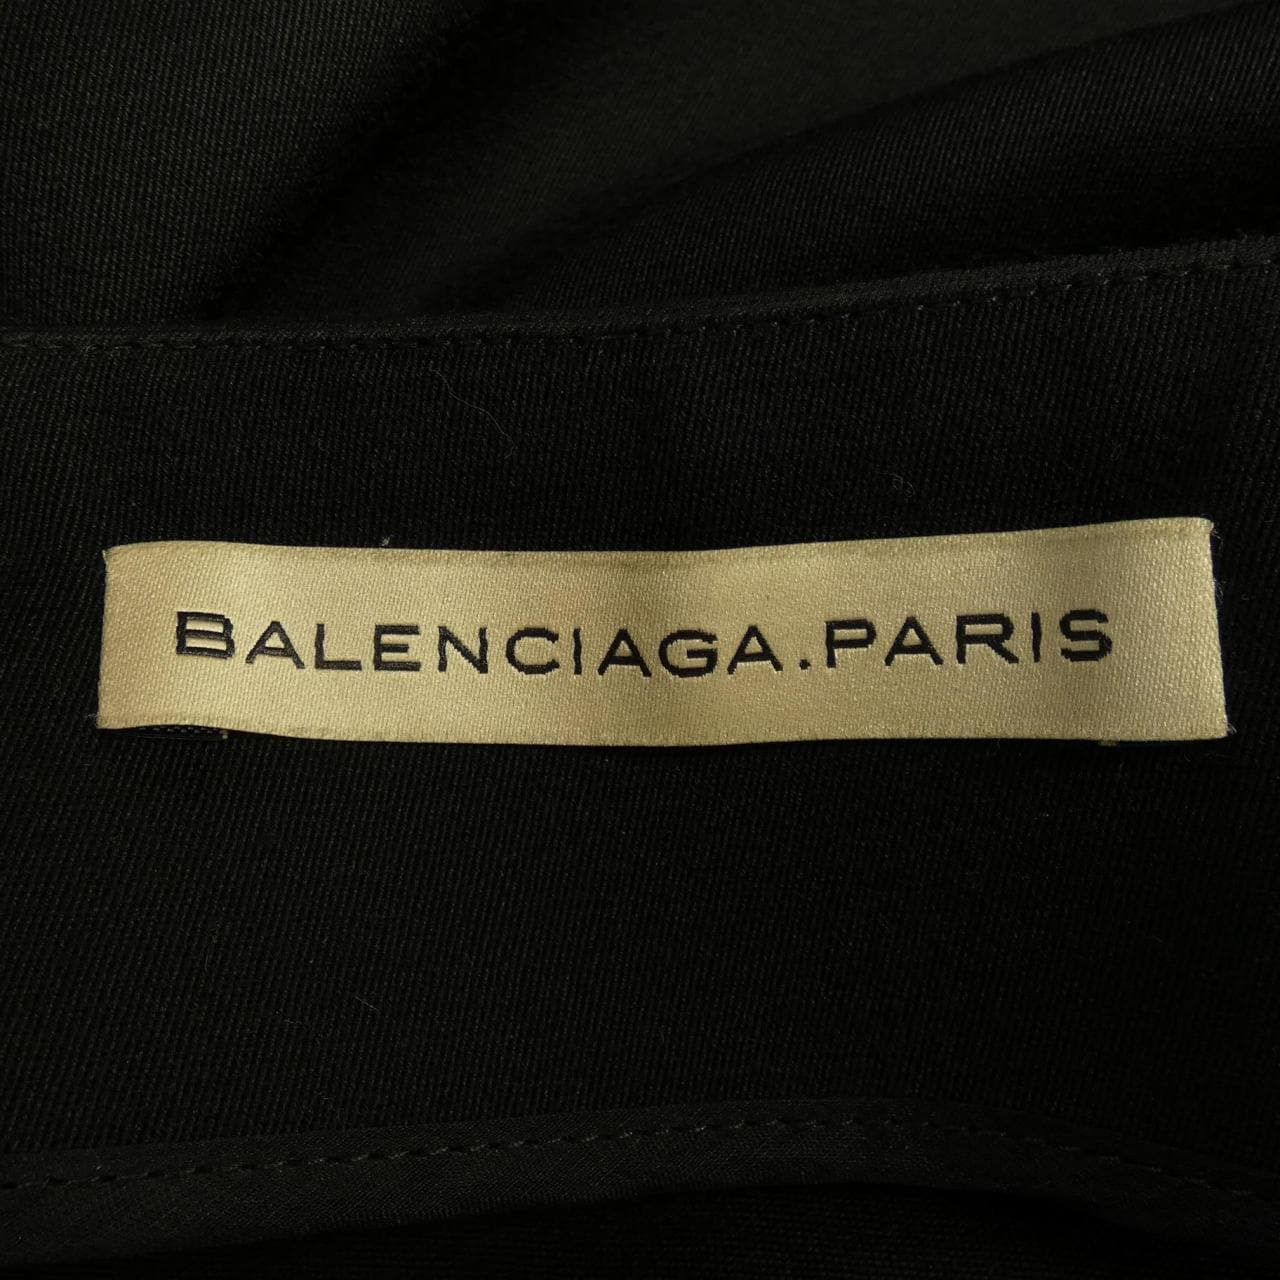 BALENCIAGA skirt